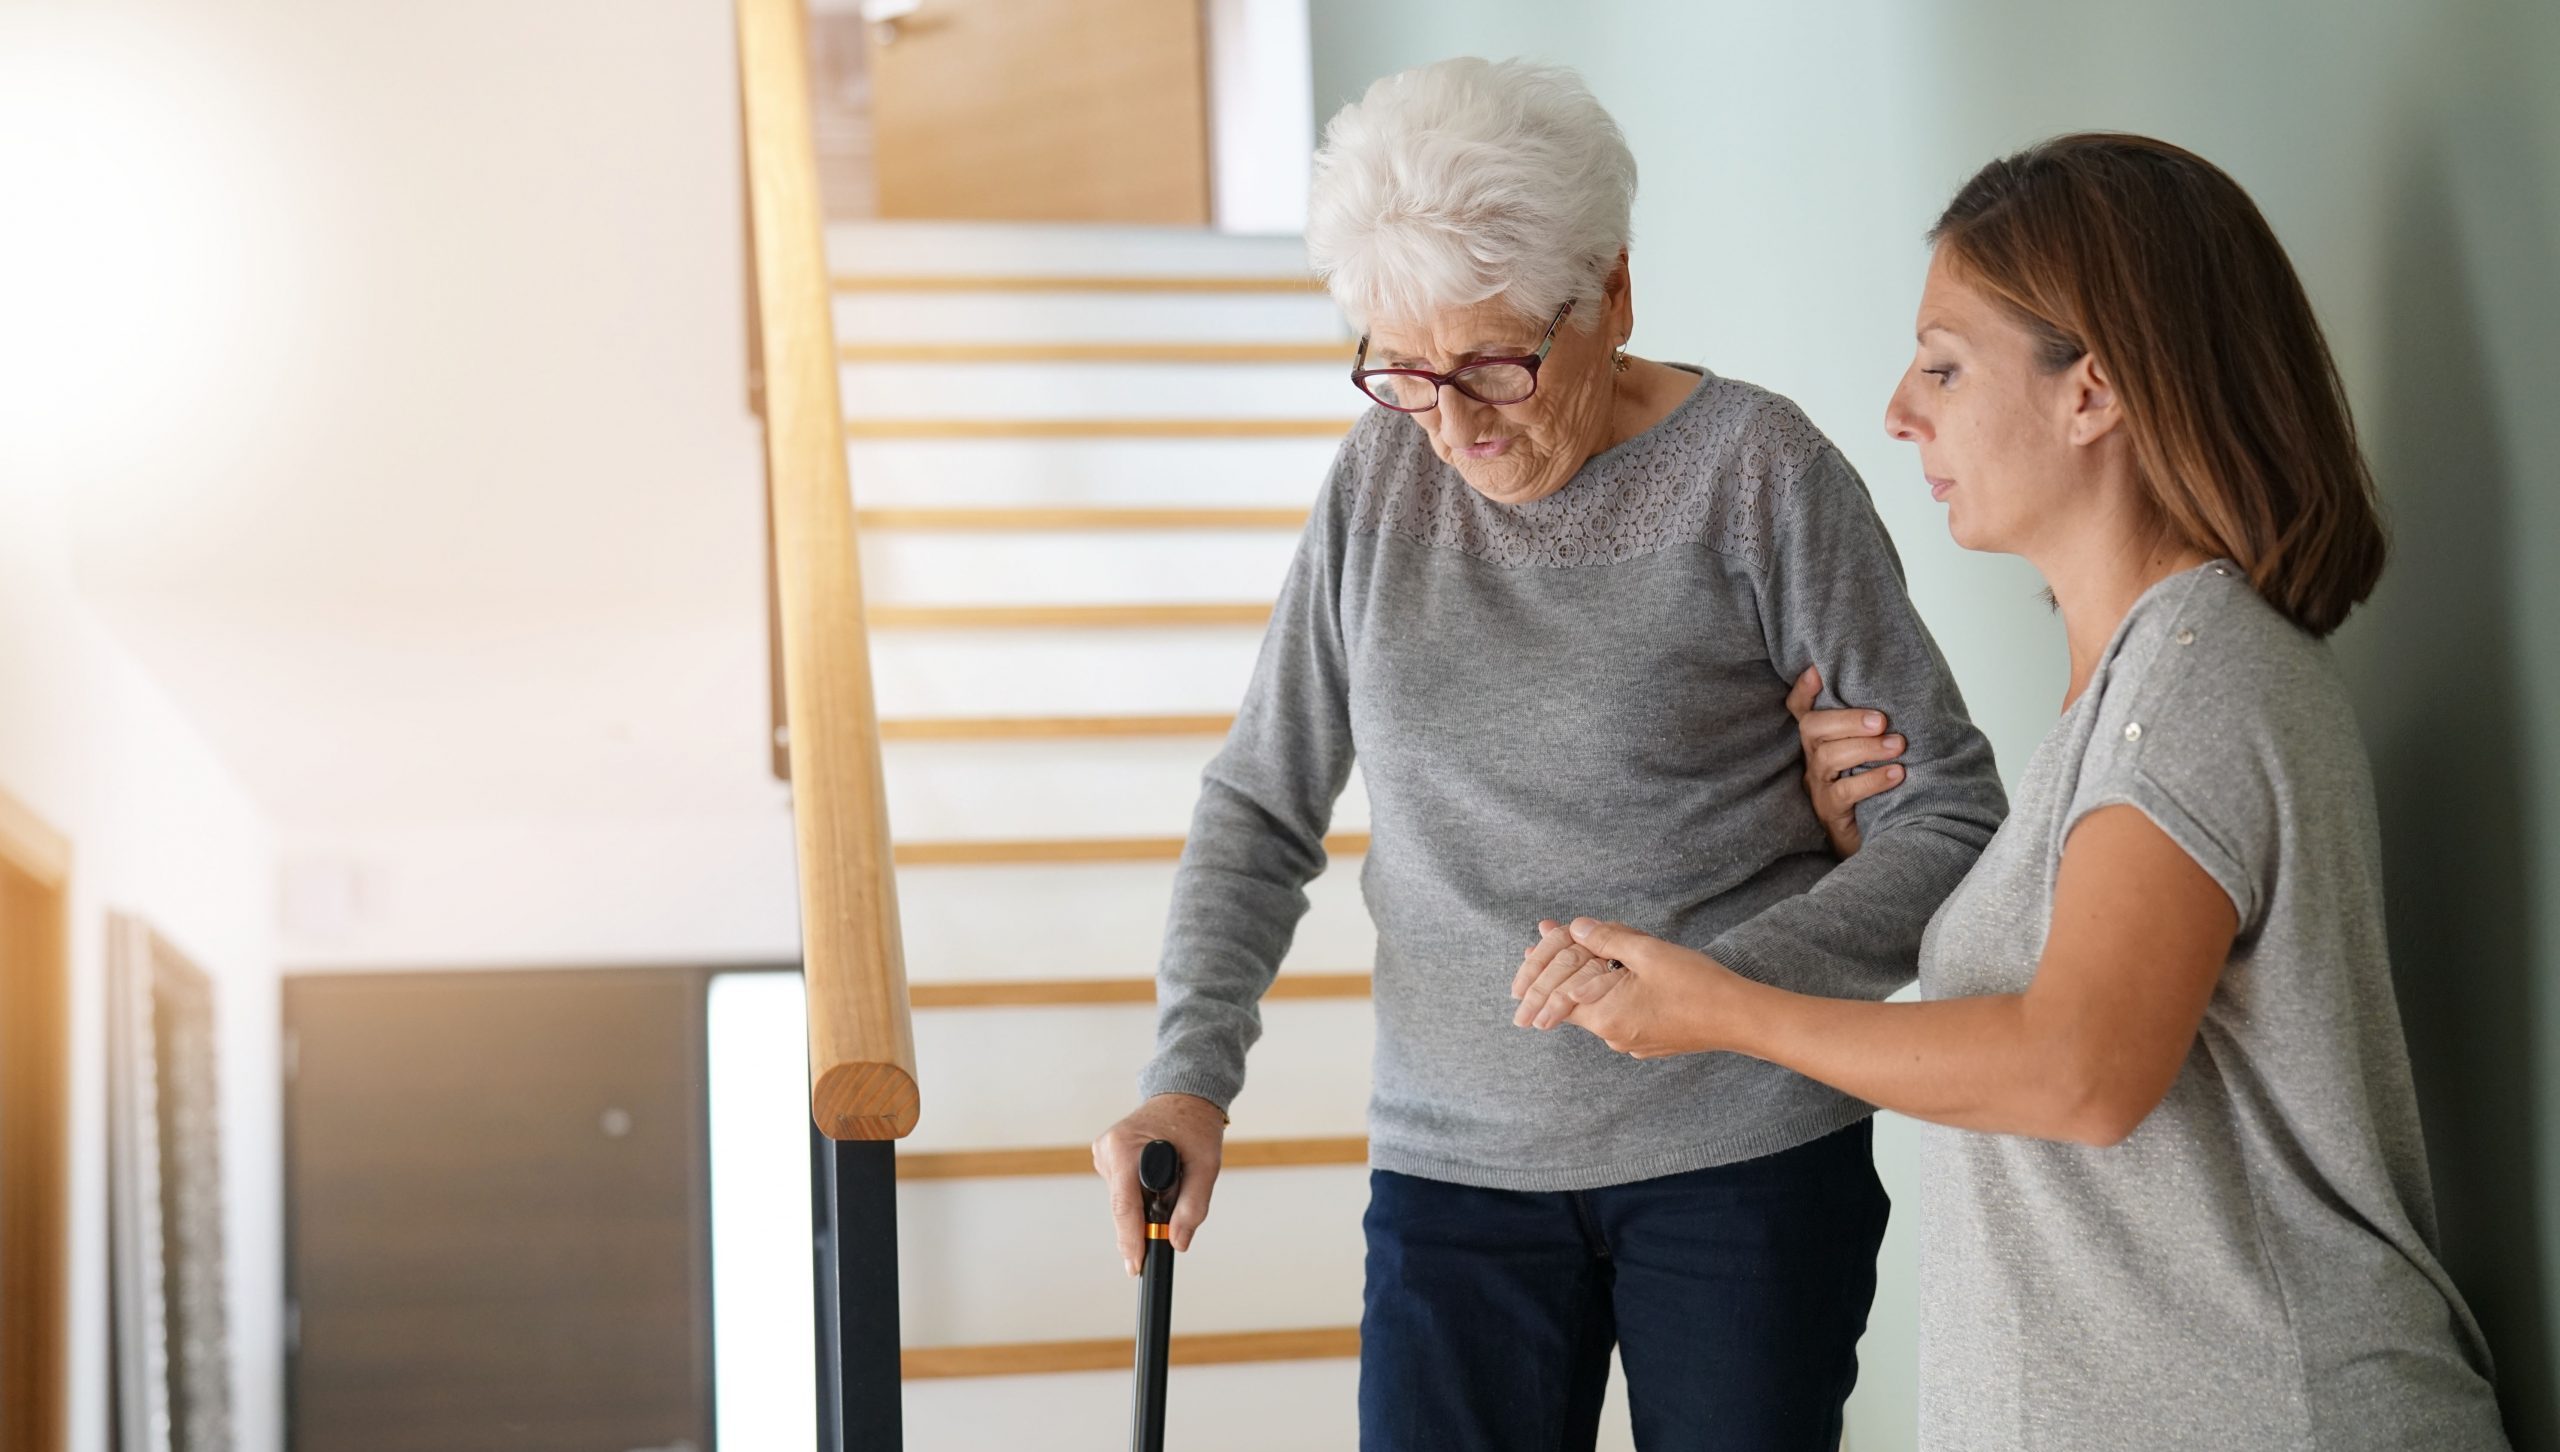 Junge Frau hilft älterer Frau auf der Treppe